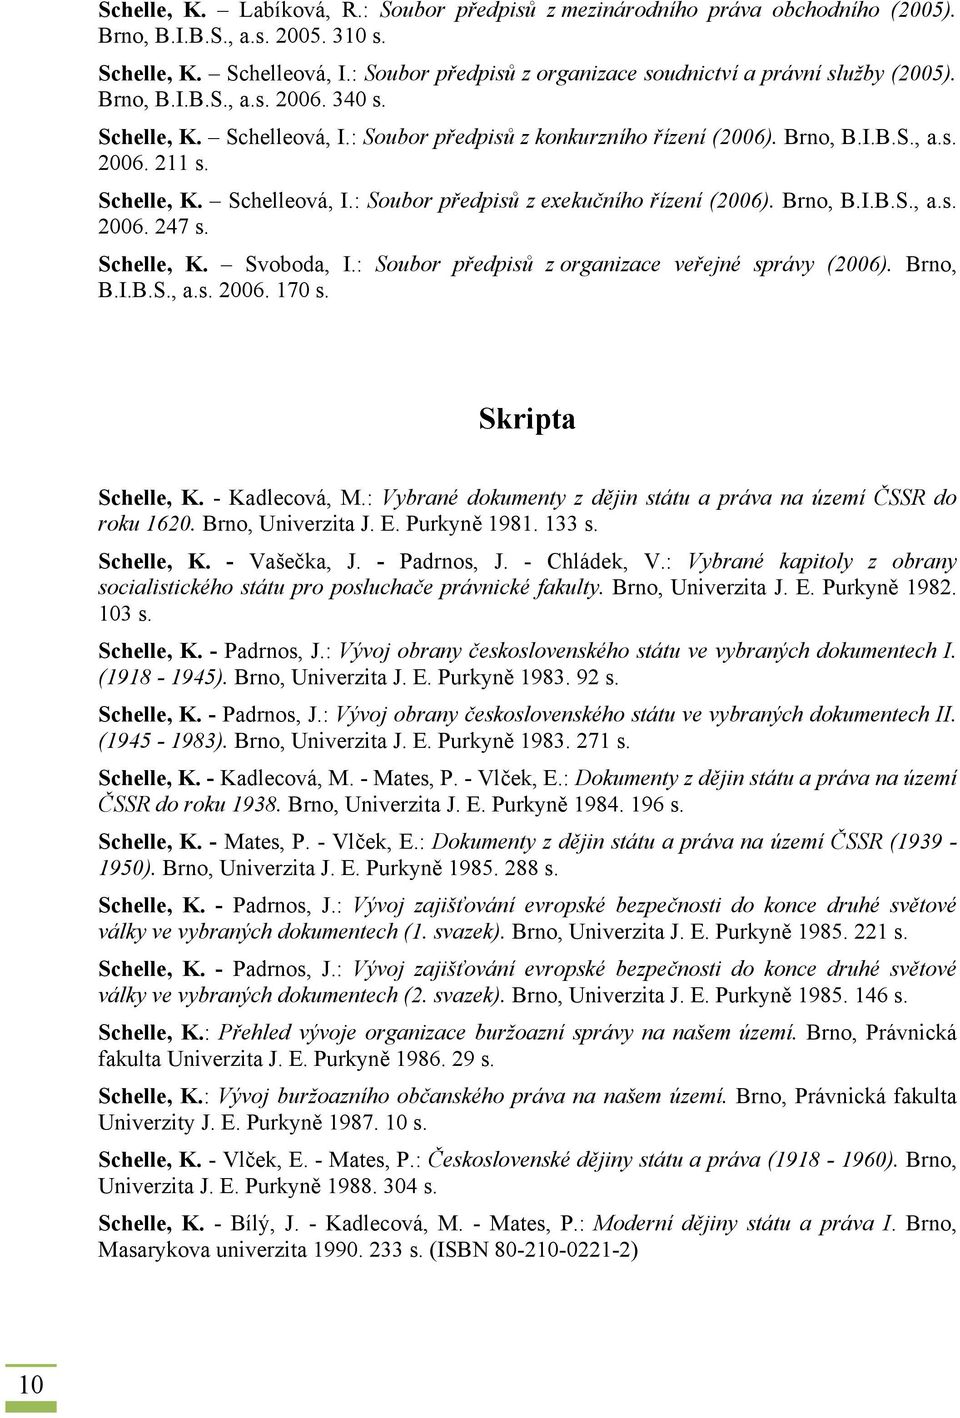 Schelle, K. Schelleová, I.: Soubor předpisů z exekučního řízení (2006). Brno, B.I.B.S., a.s. 2006. 247 s. Schelle, K. Svoboda, I.: Soubor předpisů z organizace veřejné správy (2006). Brno, B.I.B.S., a.s. 2006. 170 s.